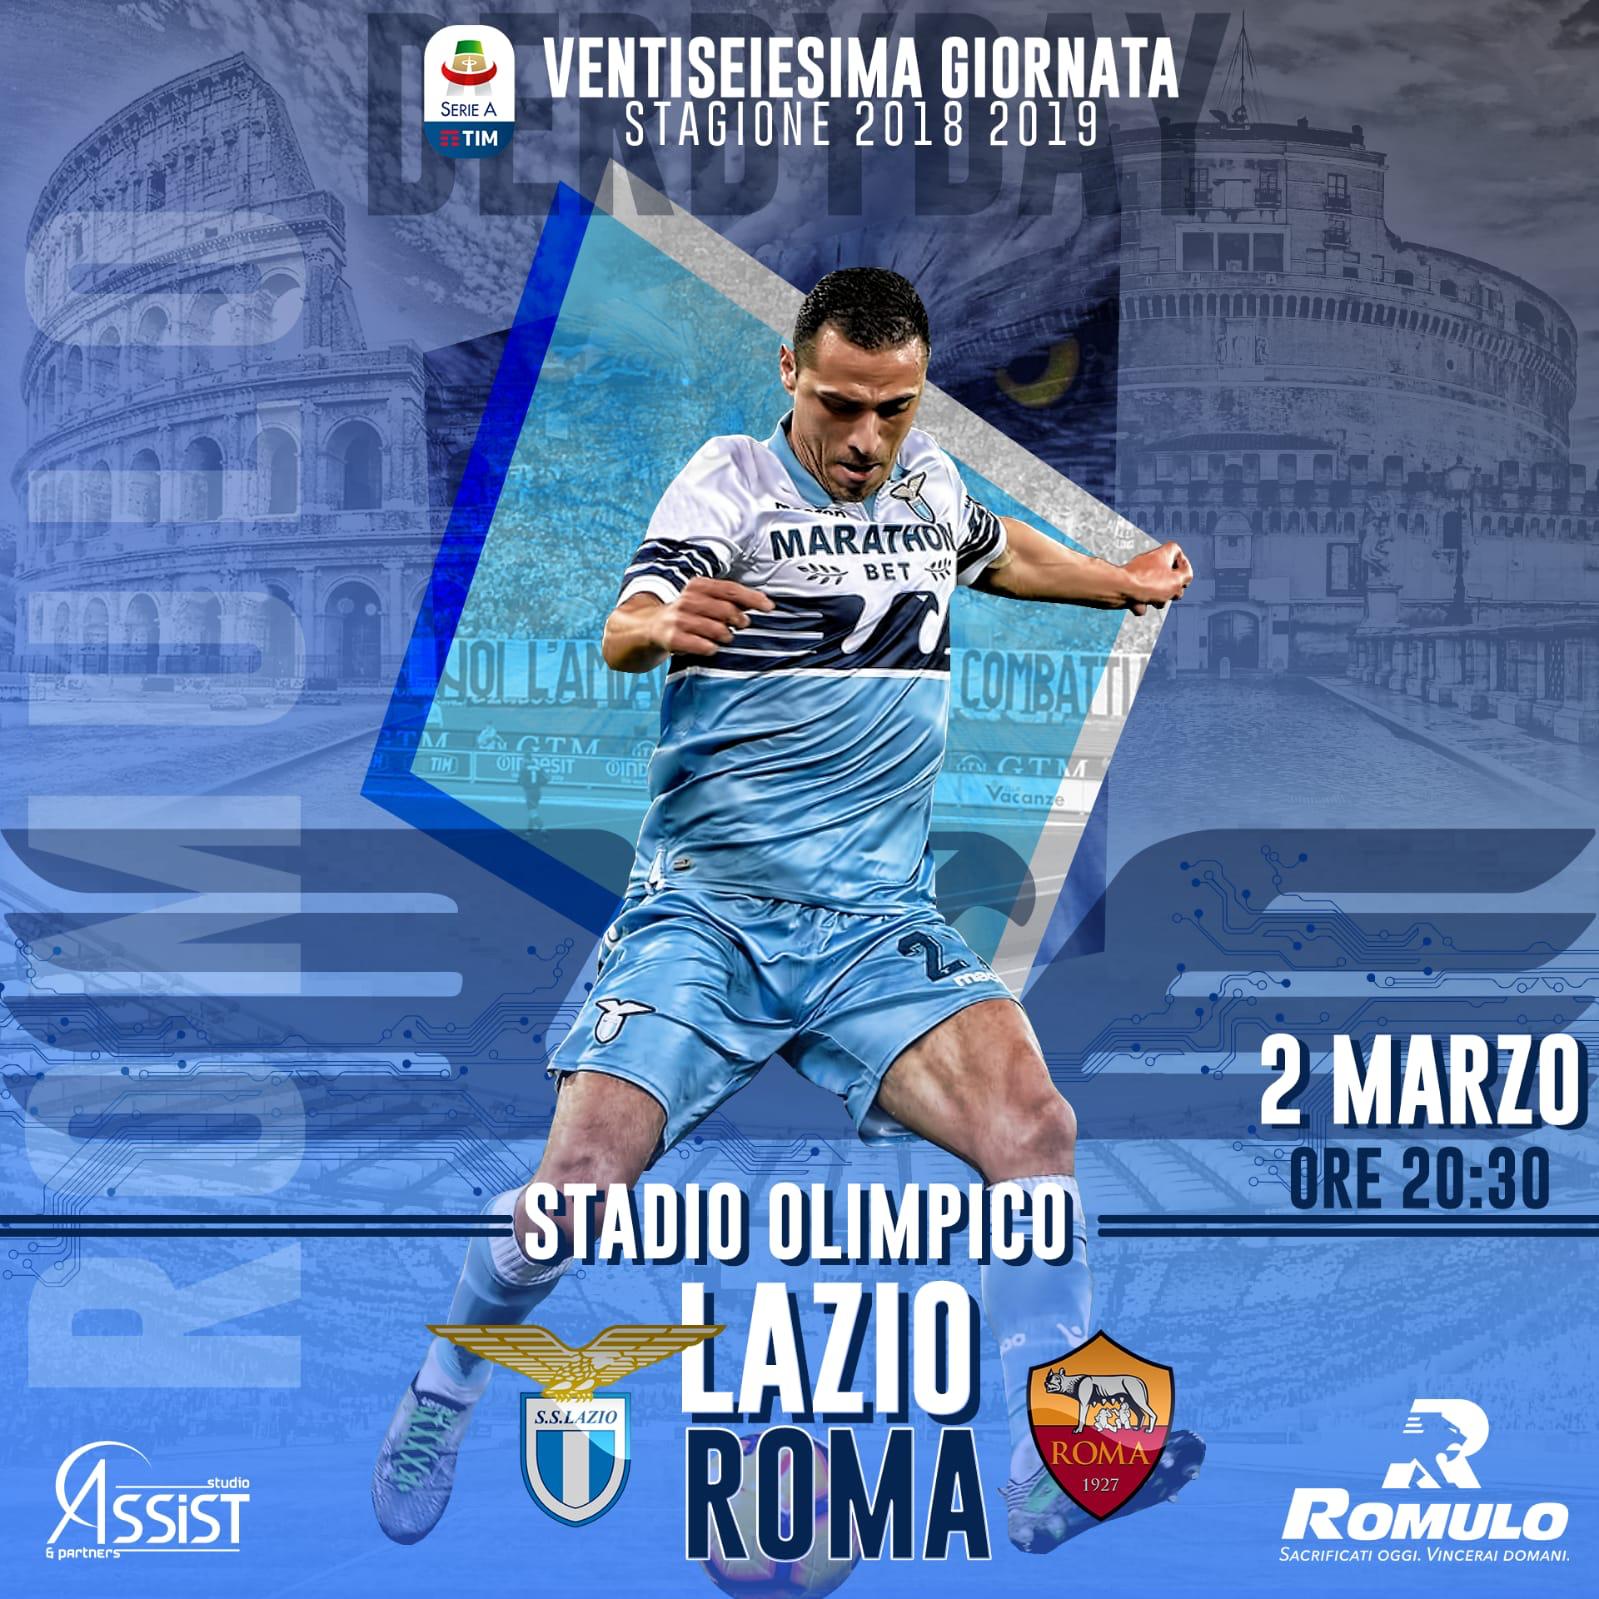 romulo-lazio-roma-derby News